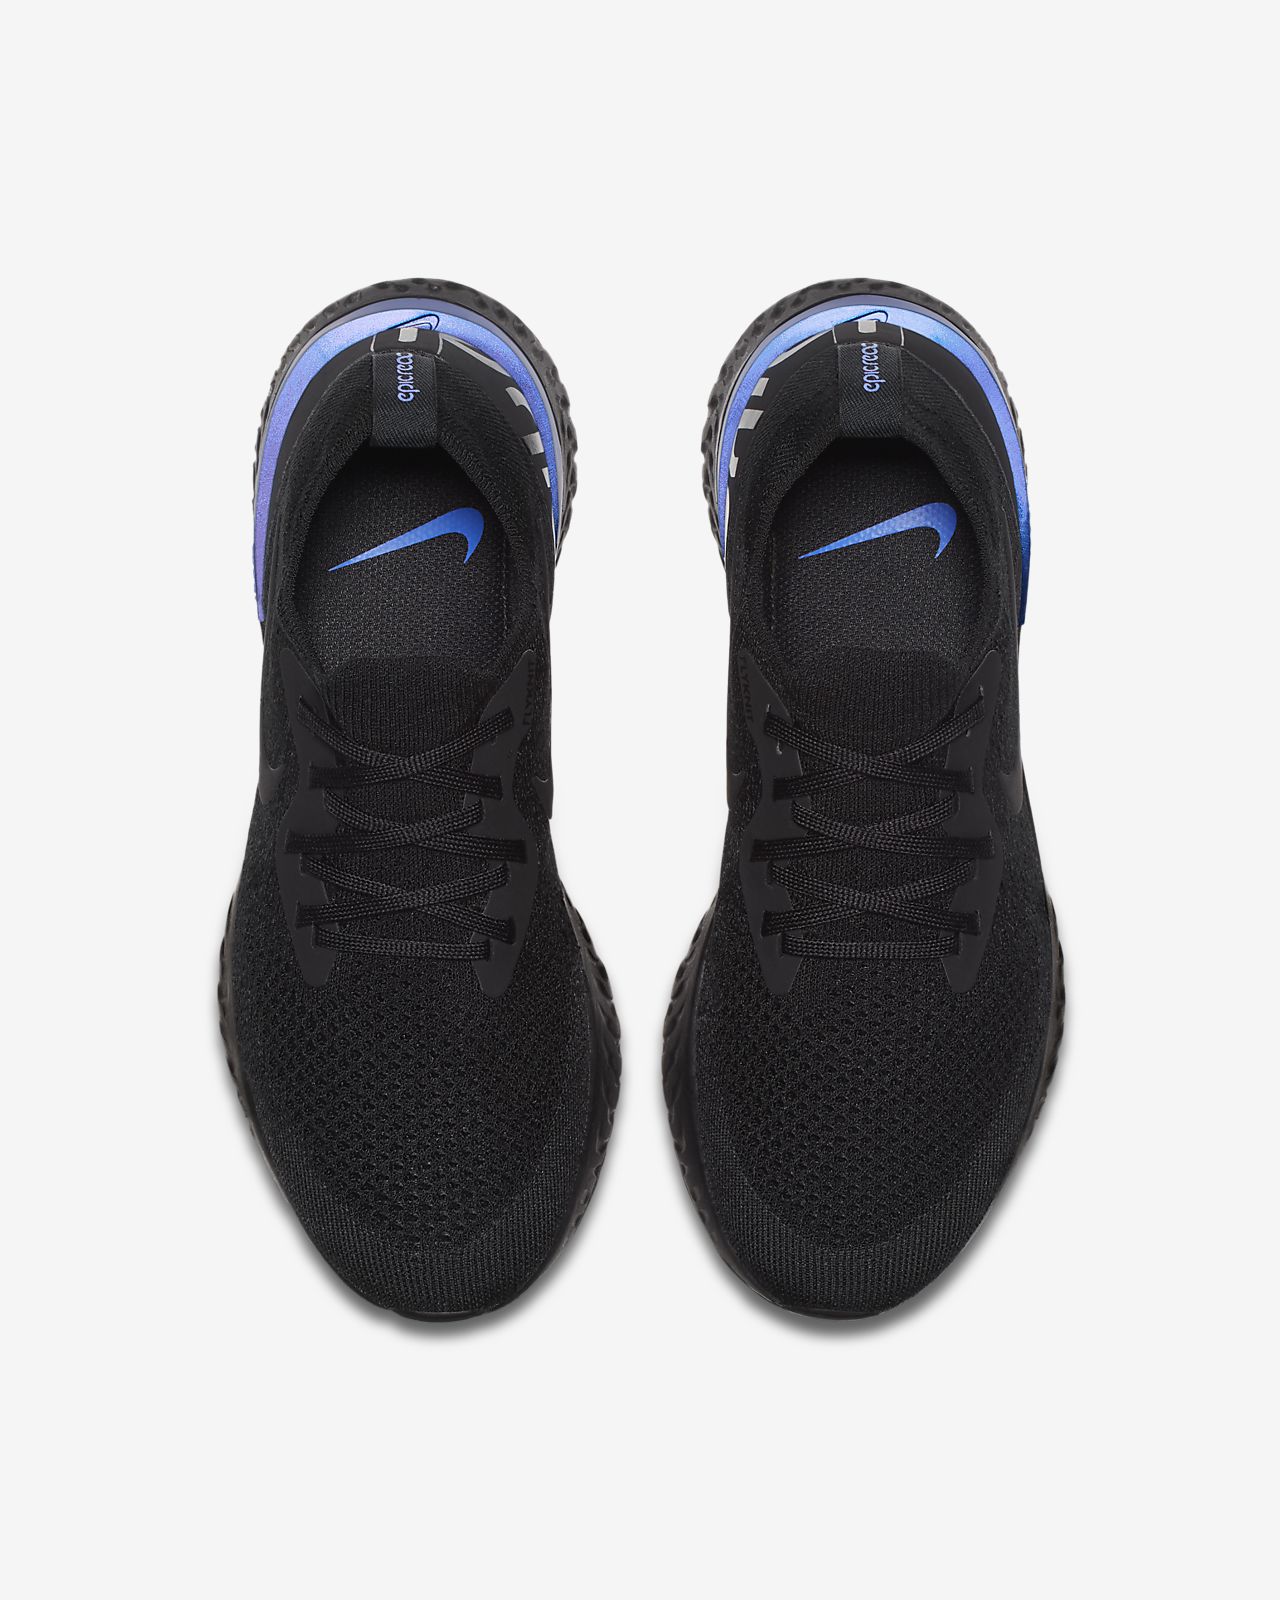 Nike Epic React Flyknit Women's Running Shoe